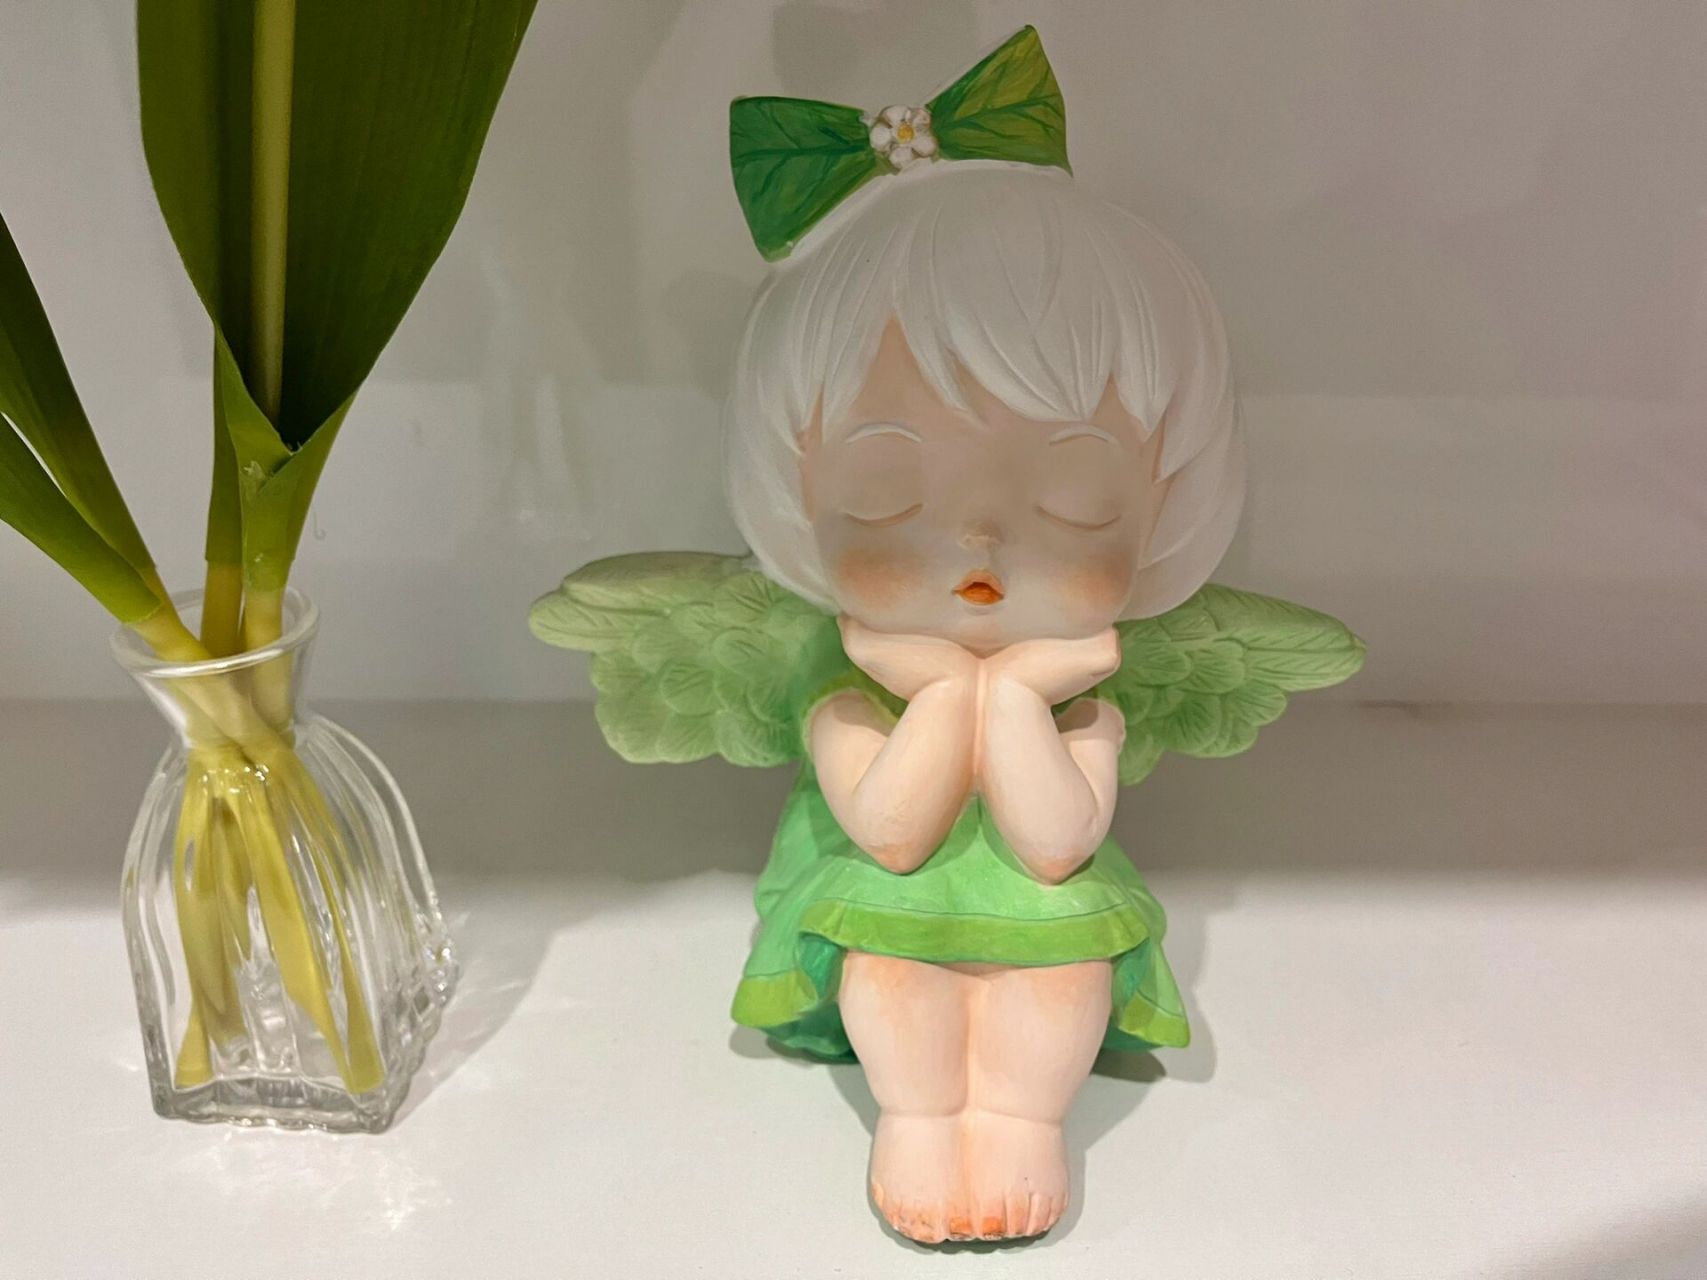 天使石膏娃娃涂色 涂了个小天使 森林绿色系 拿回家正好做玄关摆件